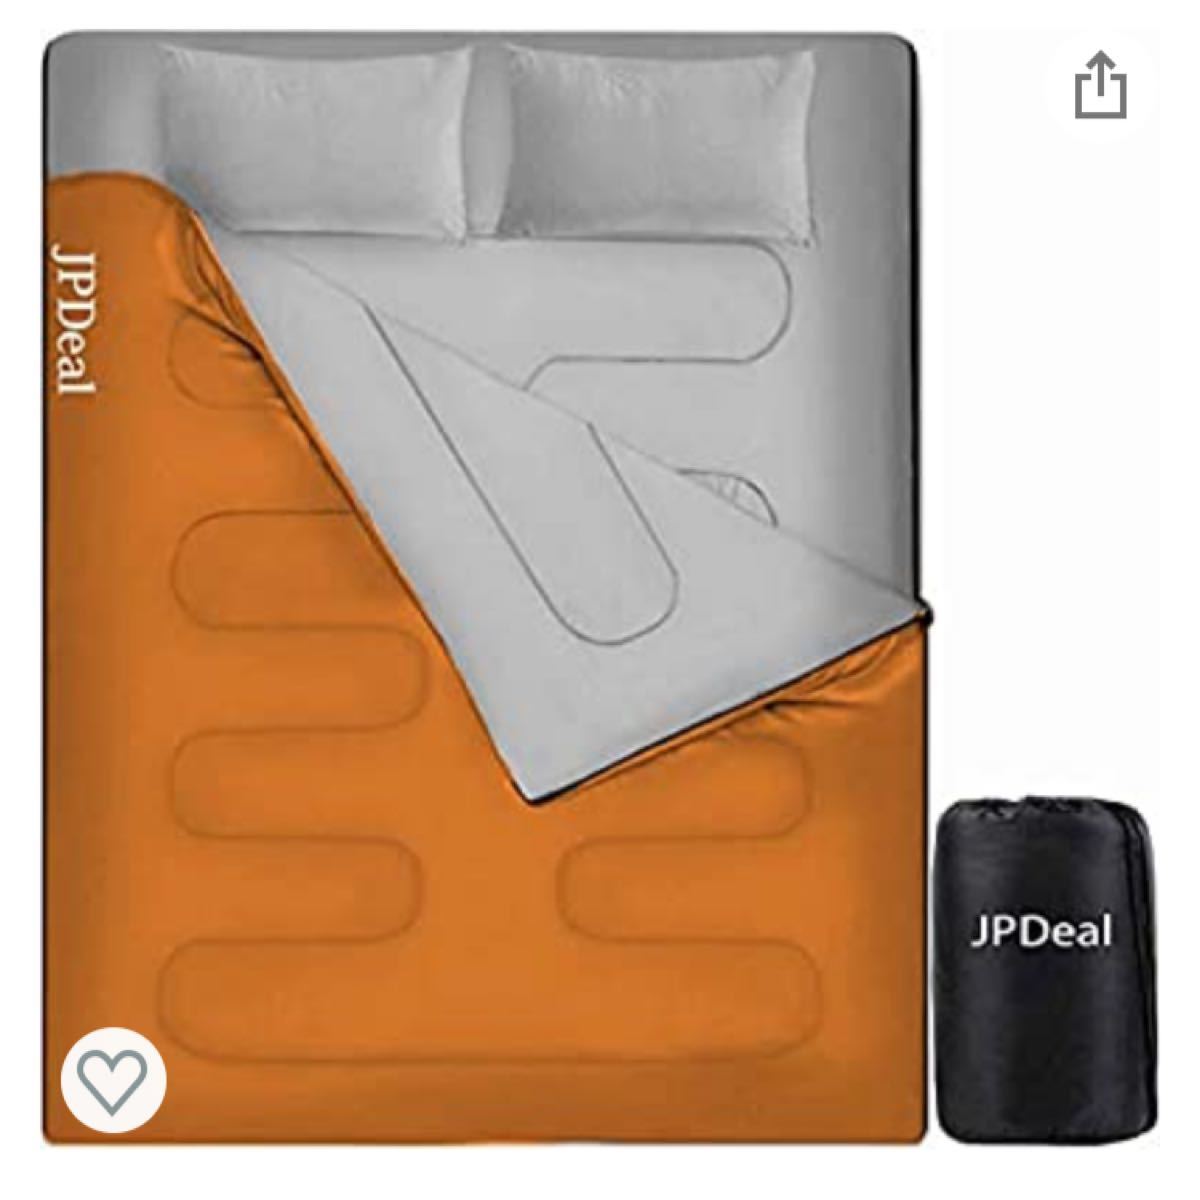 寝袋 封筒型 シュラフ コンプレッションバッグ 枕付き 210T防水シュラフ 連結可能 保温 軽量 コンパクト アウトドア 